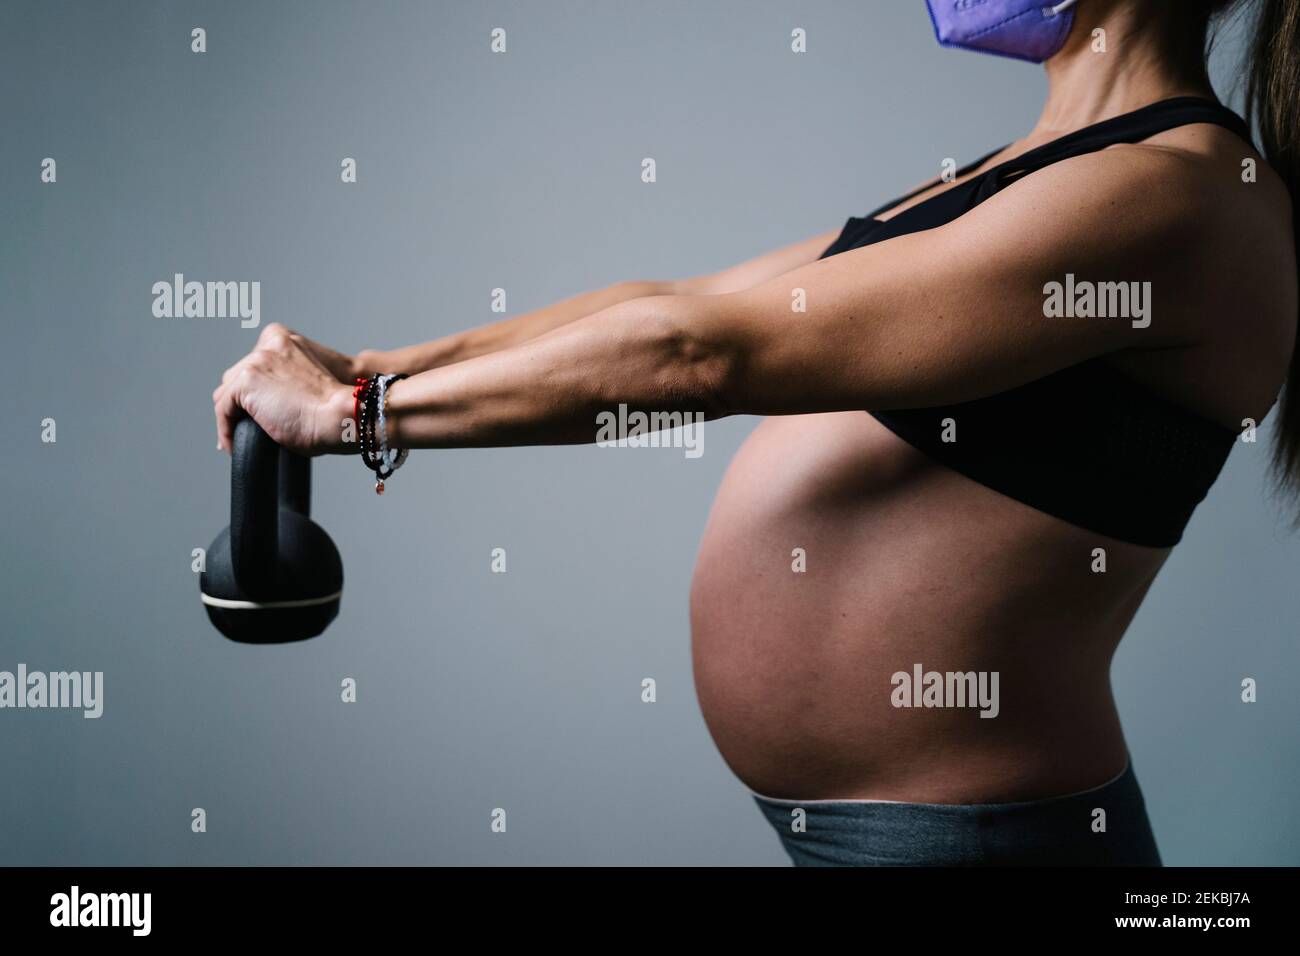 Femme enceinte tenant la kettlebell pendant qu'elle fait de l'exercice à l'hôpital Banque D'Images